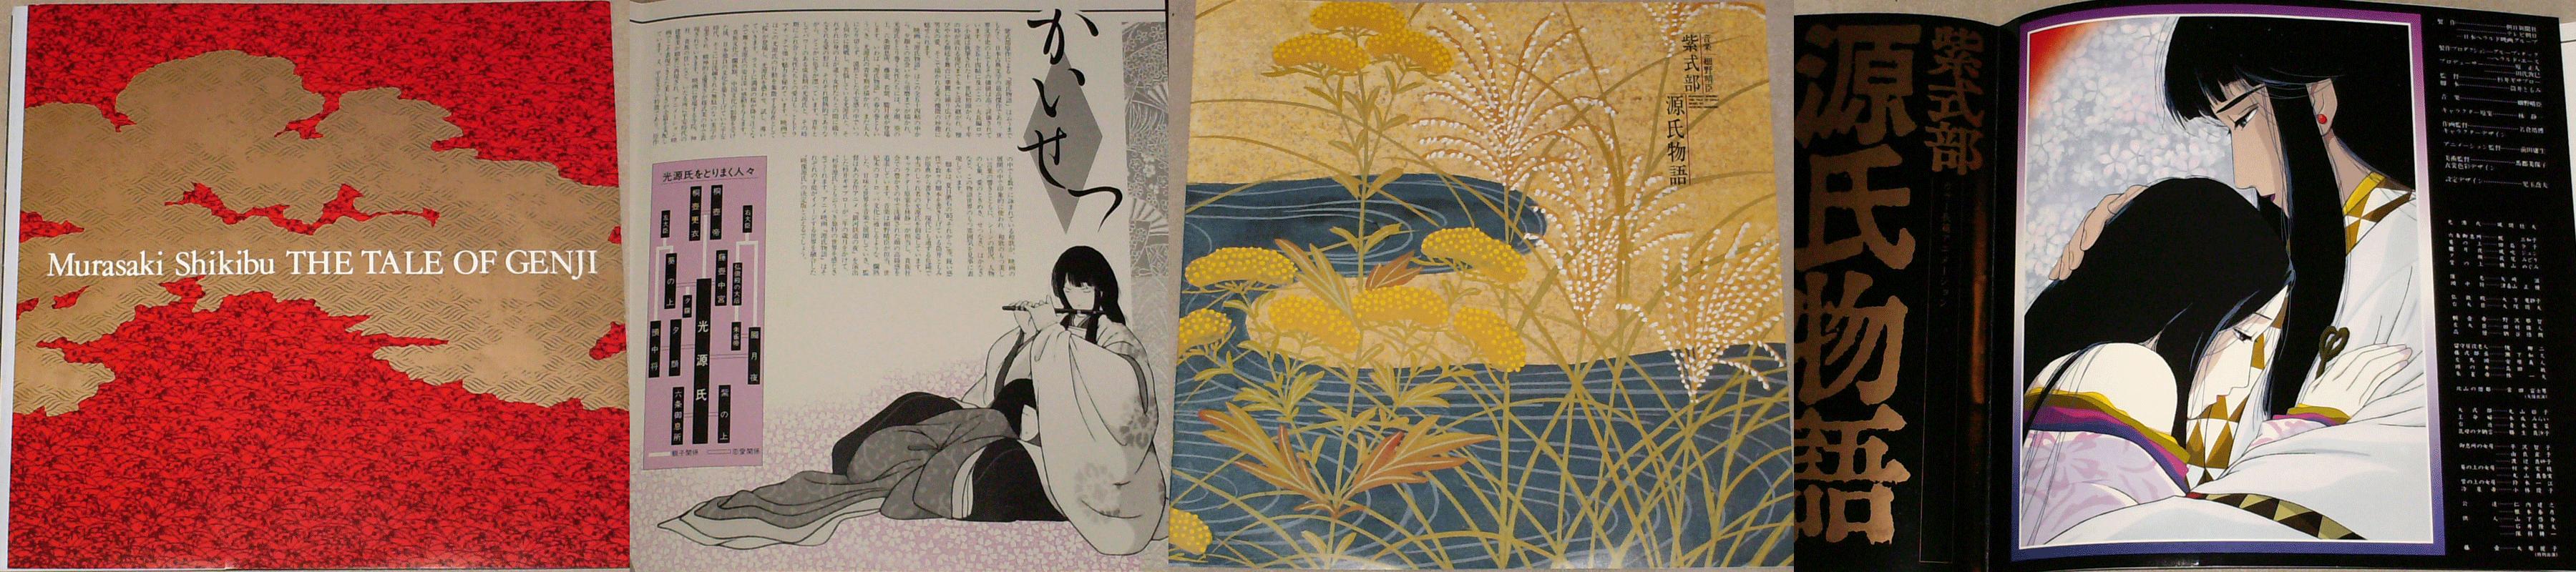 Haruomi Hosono - 源 氏 物 語 (The Tale of Genji), 1987.